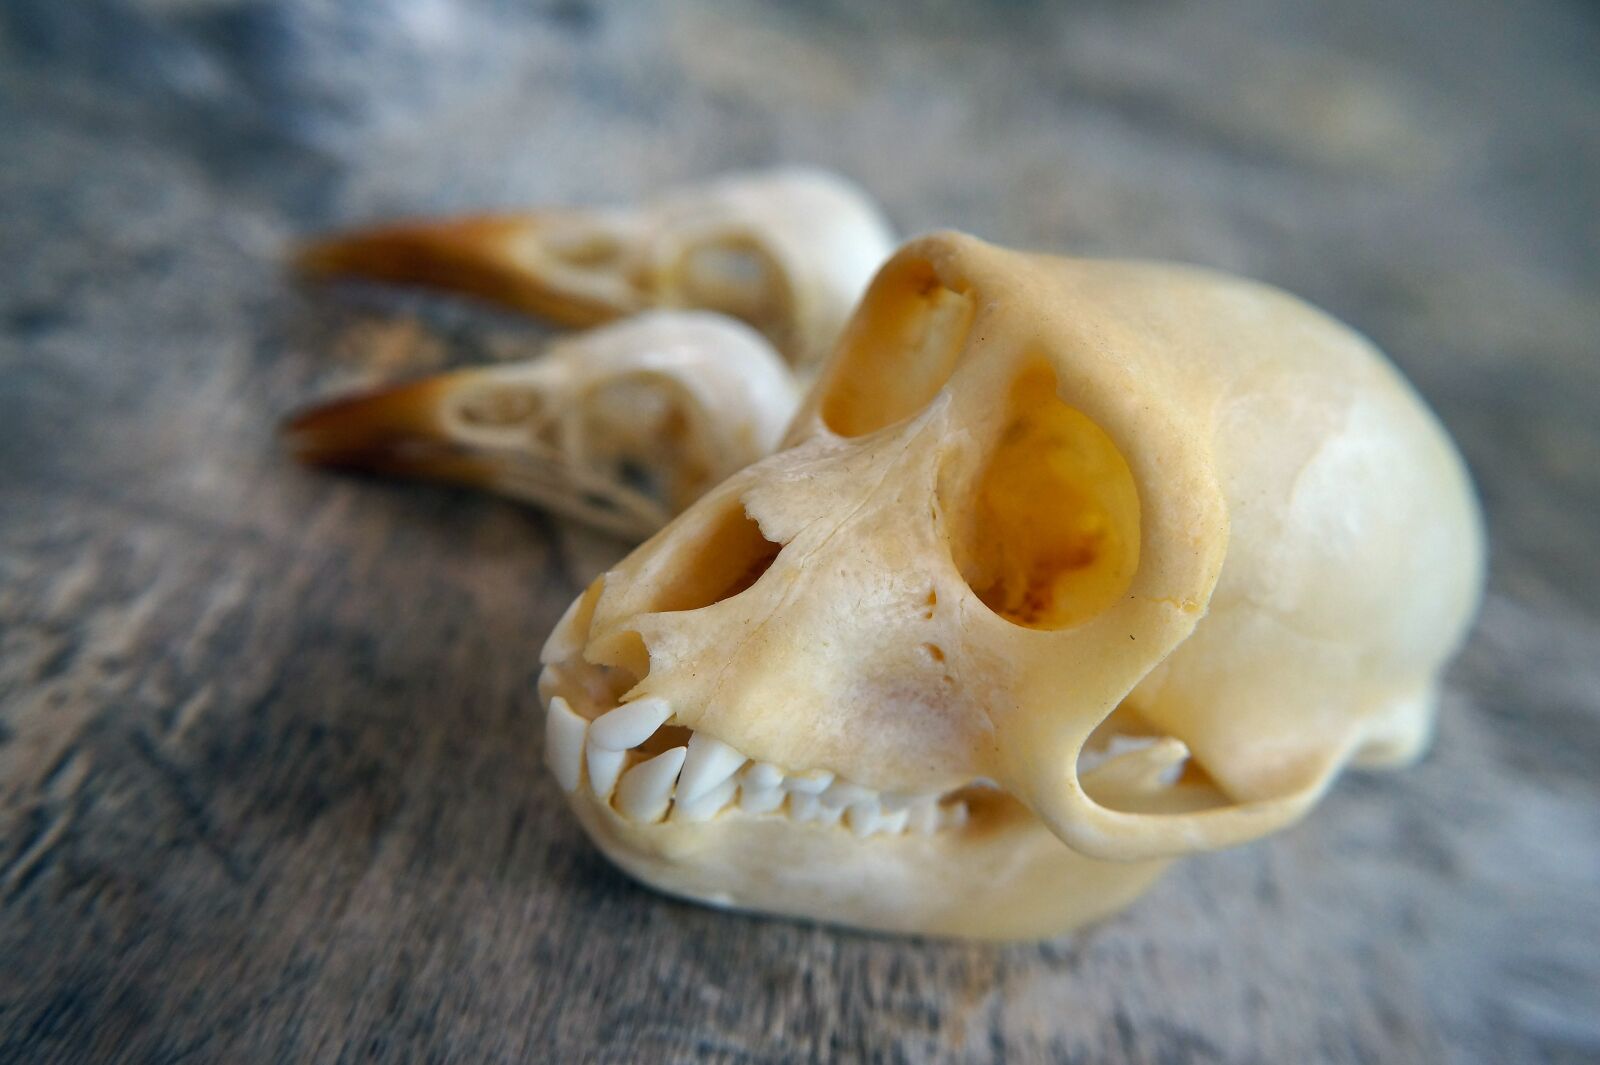 Sony E 20mm F2.8 sample photo. Skull, monkey, mammal photography